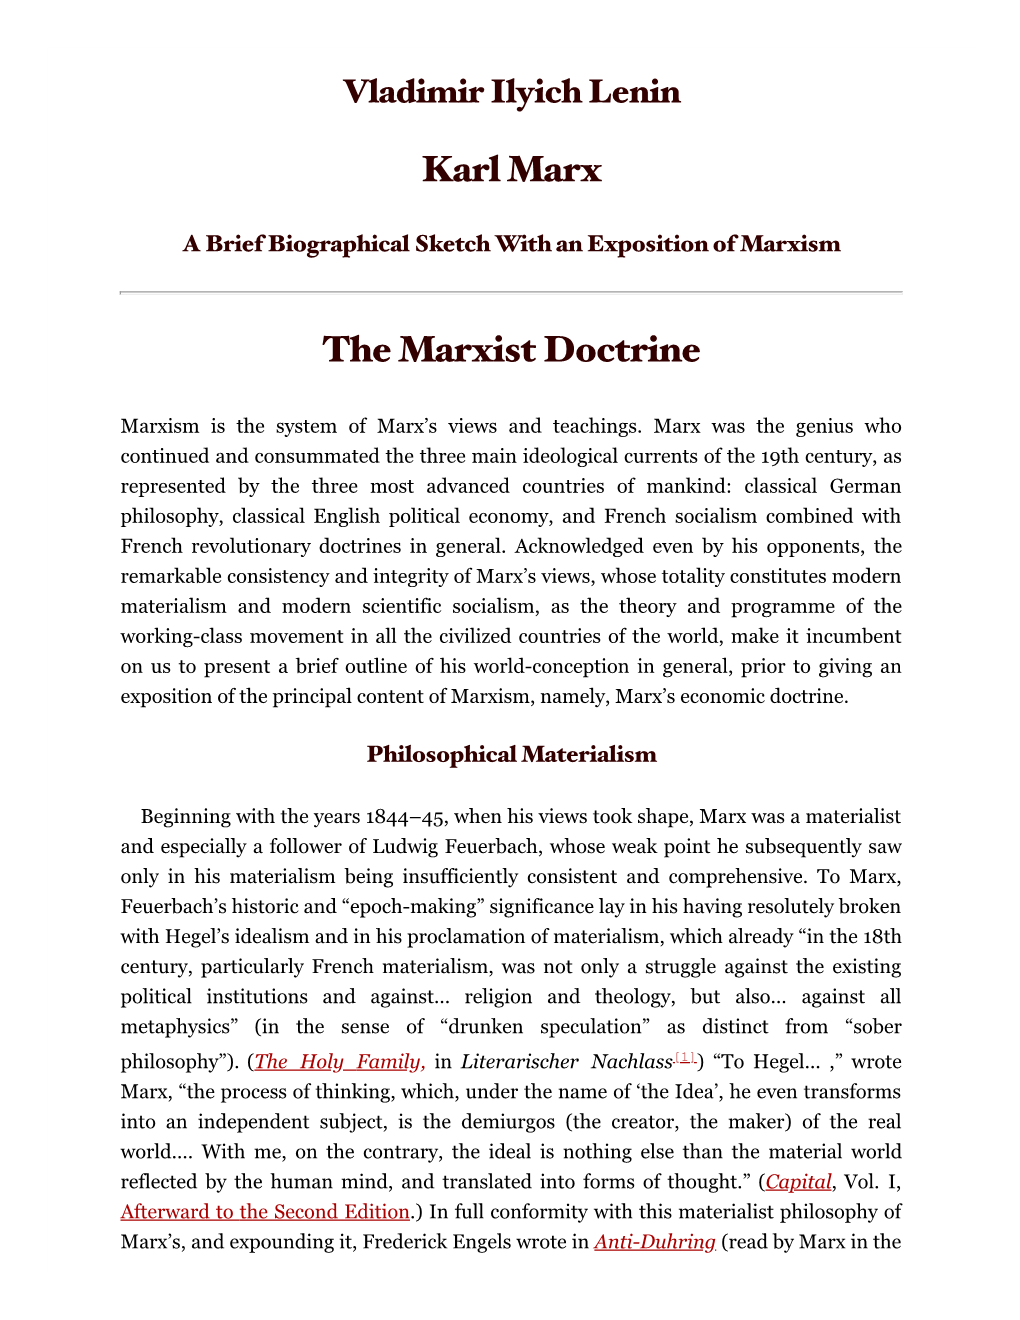 Karl Marx the Marxist Doctrine